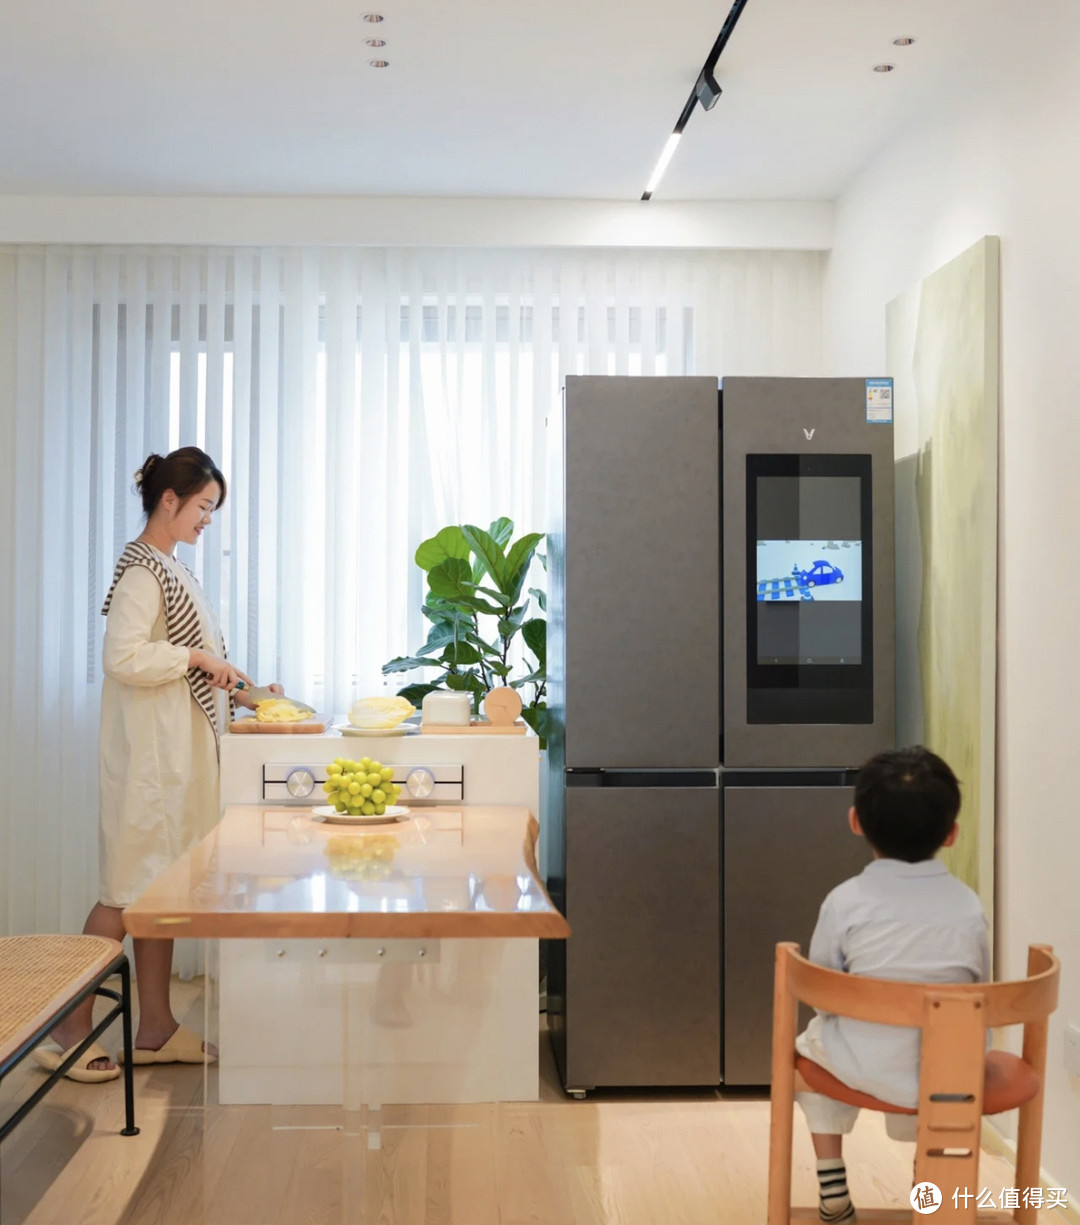 一万多的冰箱和三四千元的冰箱有什么不同？贵的冰箱到底贵在哪？推荐冰箱最适合家庭式用的价位。